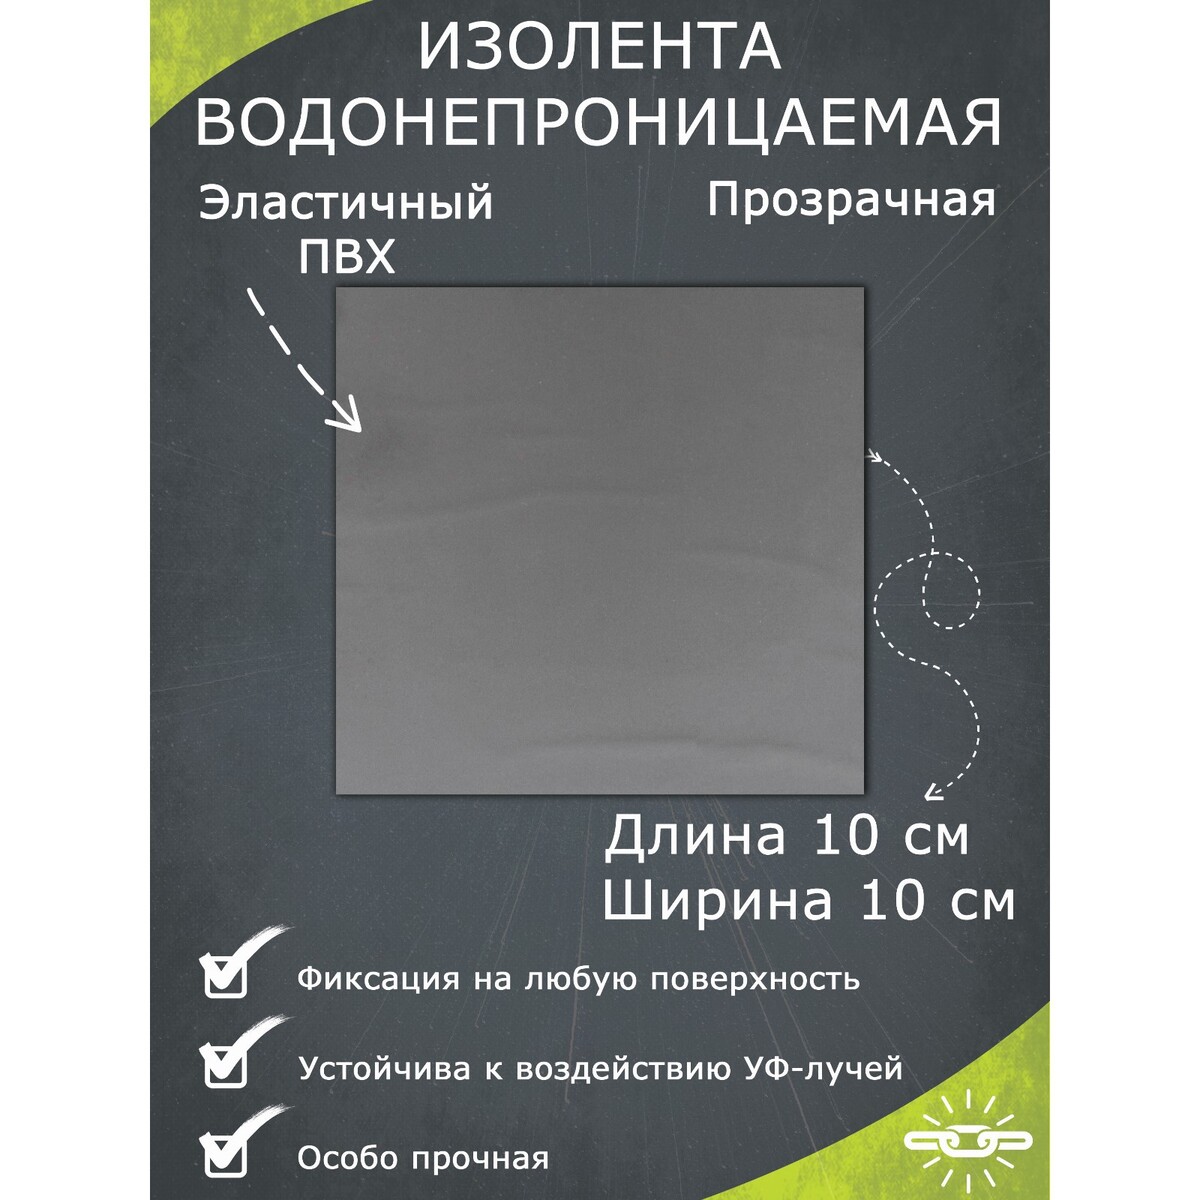 Водонепроницаемая изолента 10×10 см, прозрачная водонепроницаемая изолента 10×20 см